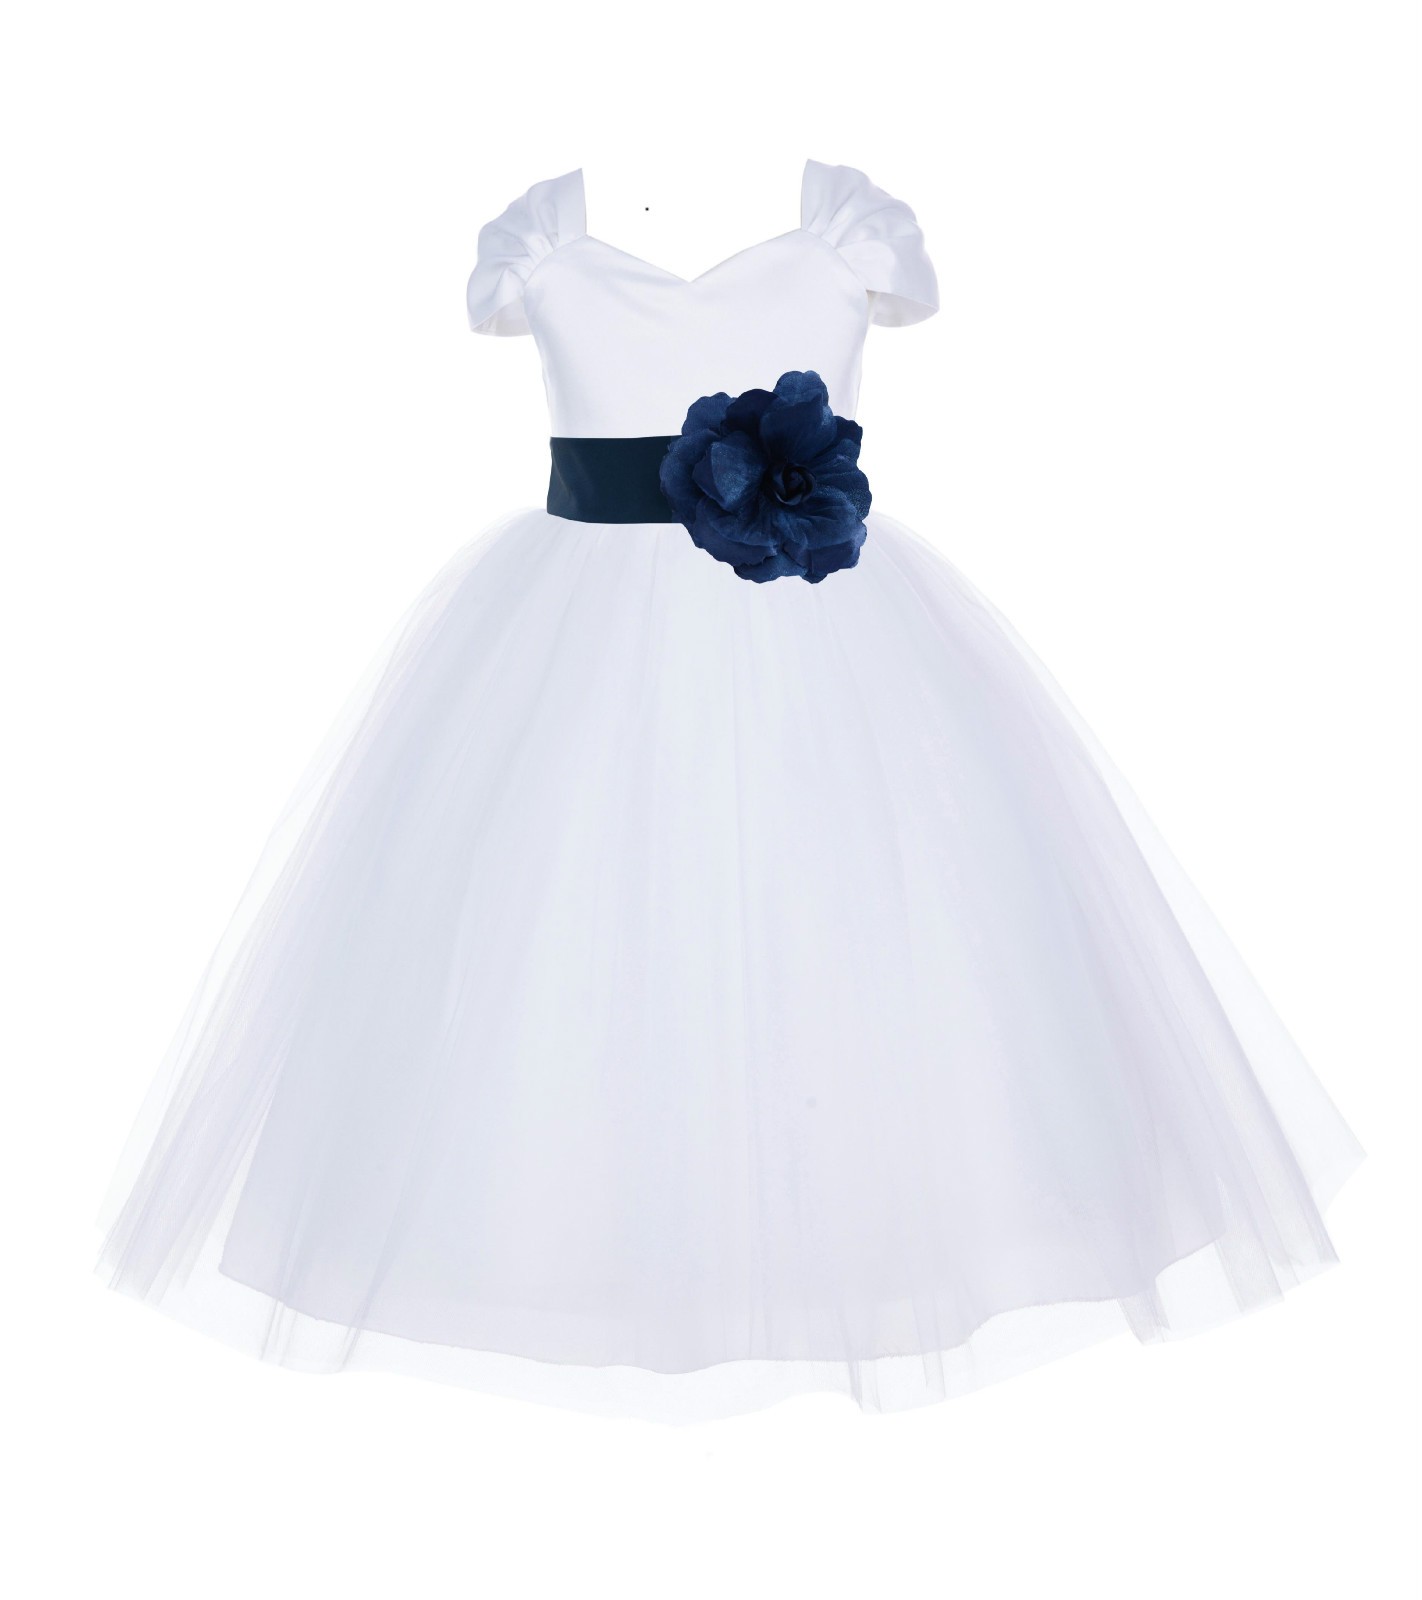 White/Peacock V-shaped Neckline Short Sleeves Tulle Flower Girl Dress 154S